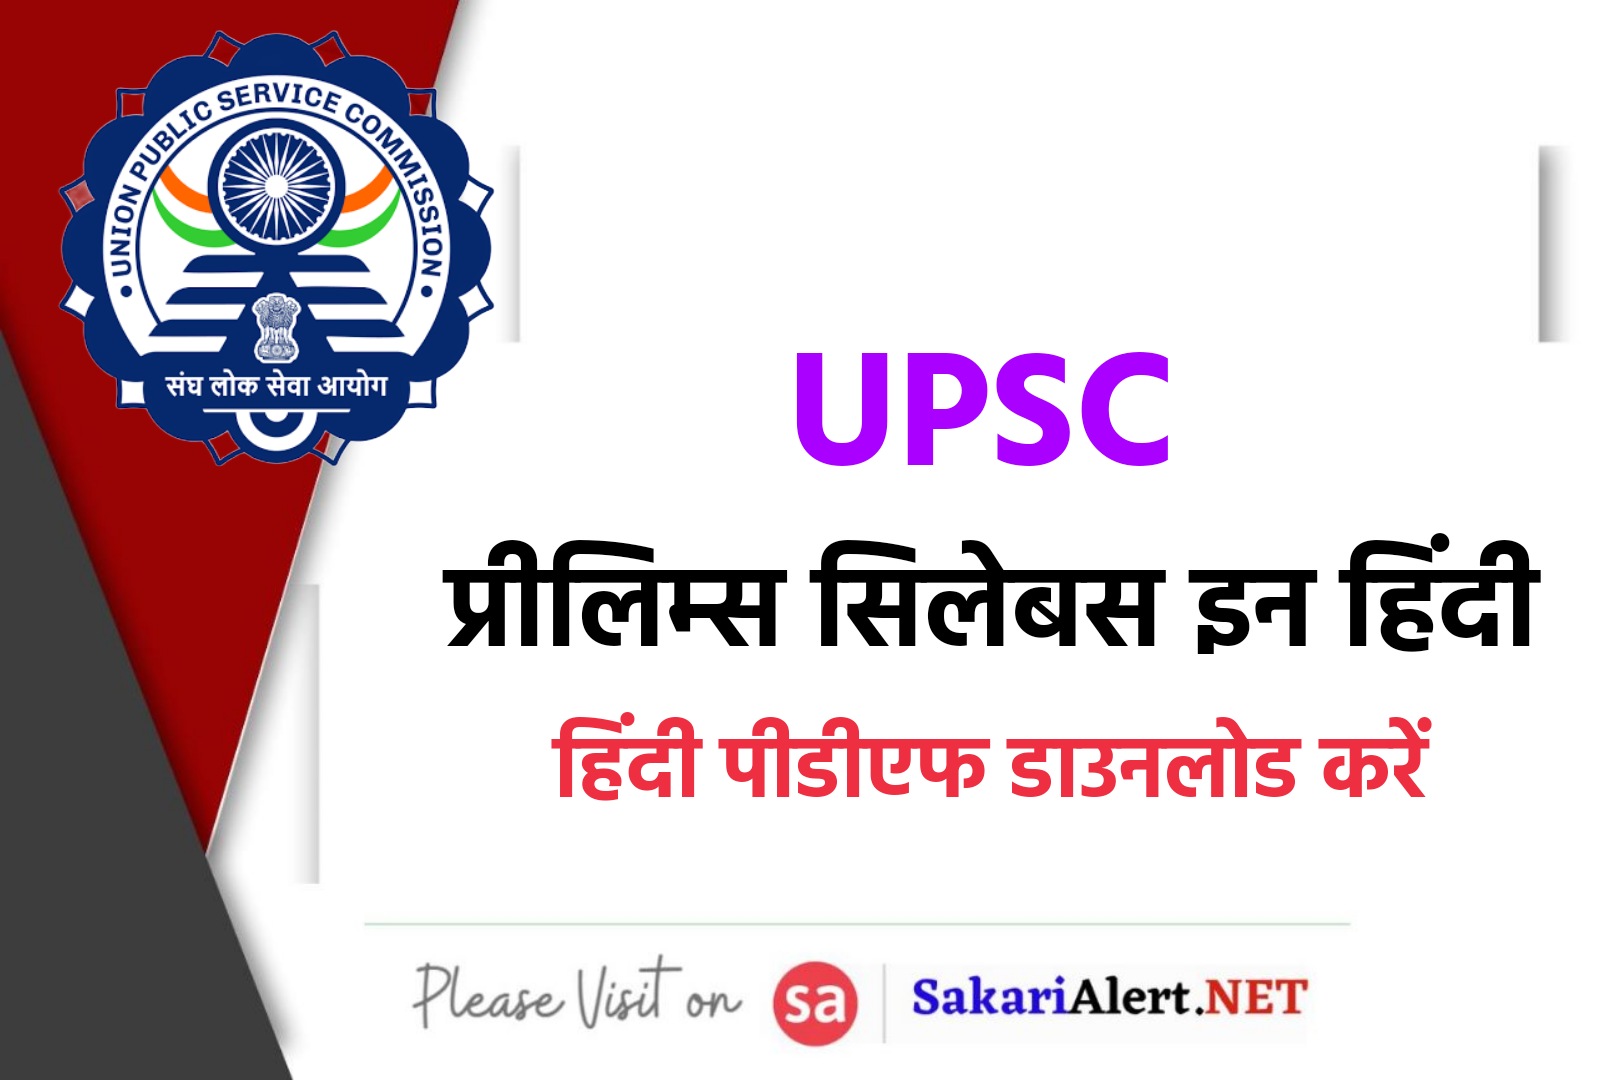 UPSC Prelims Syllabus 2023 In Hindi | यूपीएससी प्रारम्भिक परीक्षा नया सिलेबस और परीक्षा पैटर्न